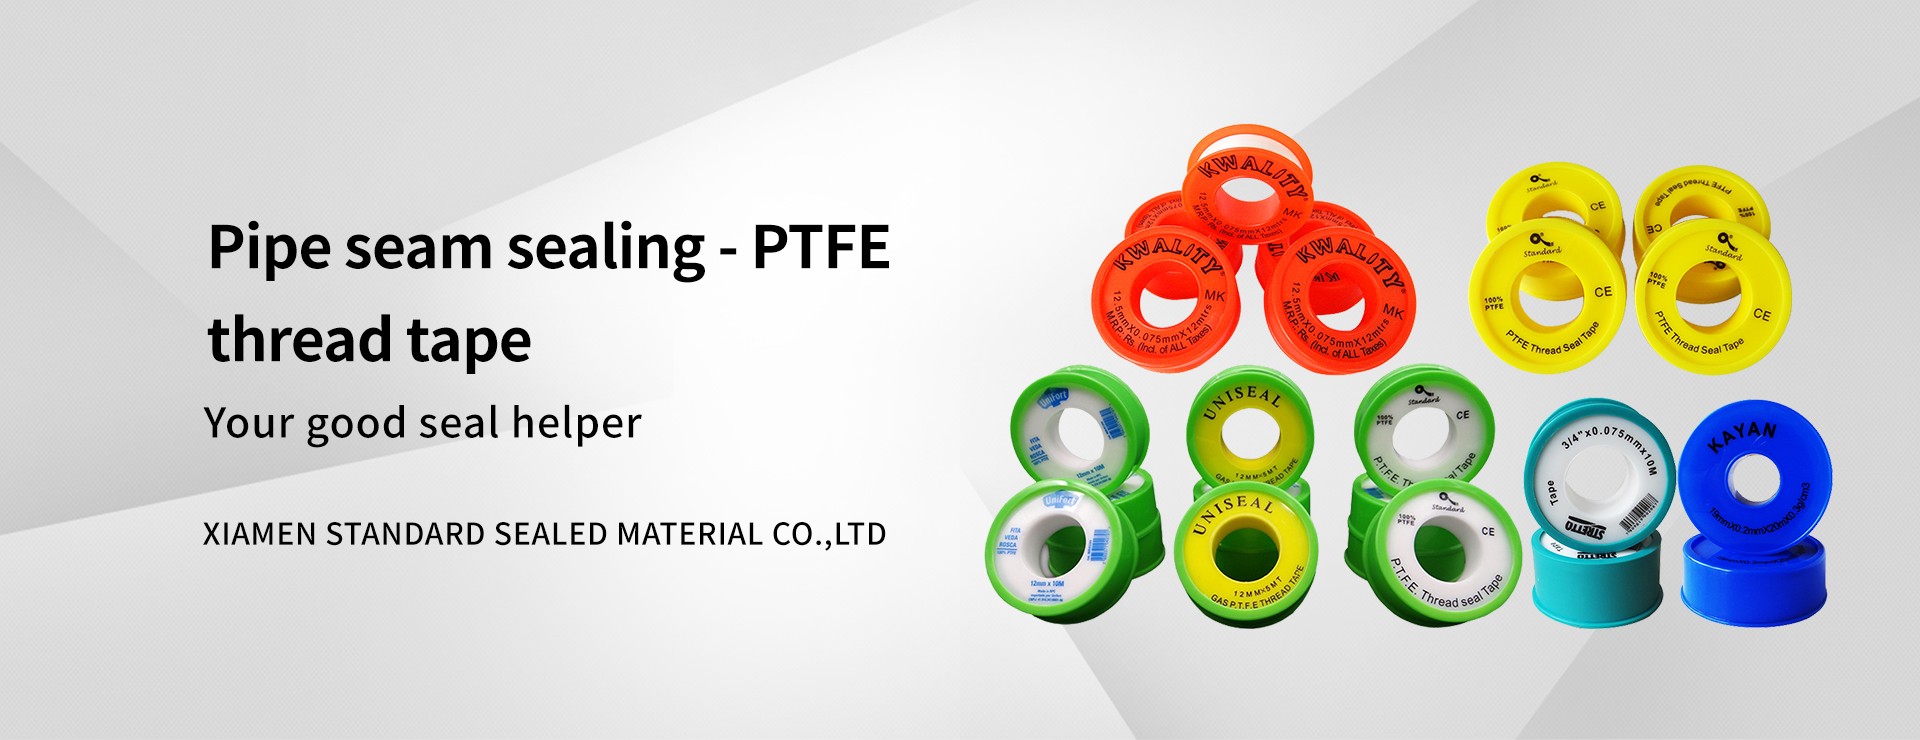 PTFE sealing tape